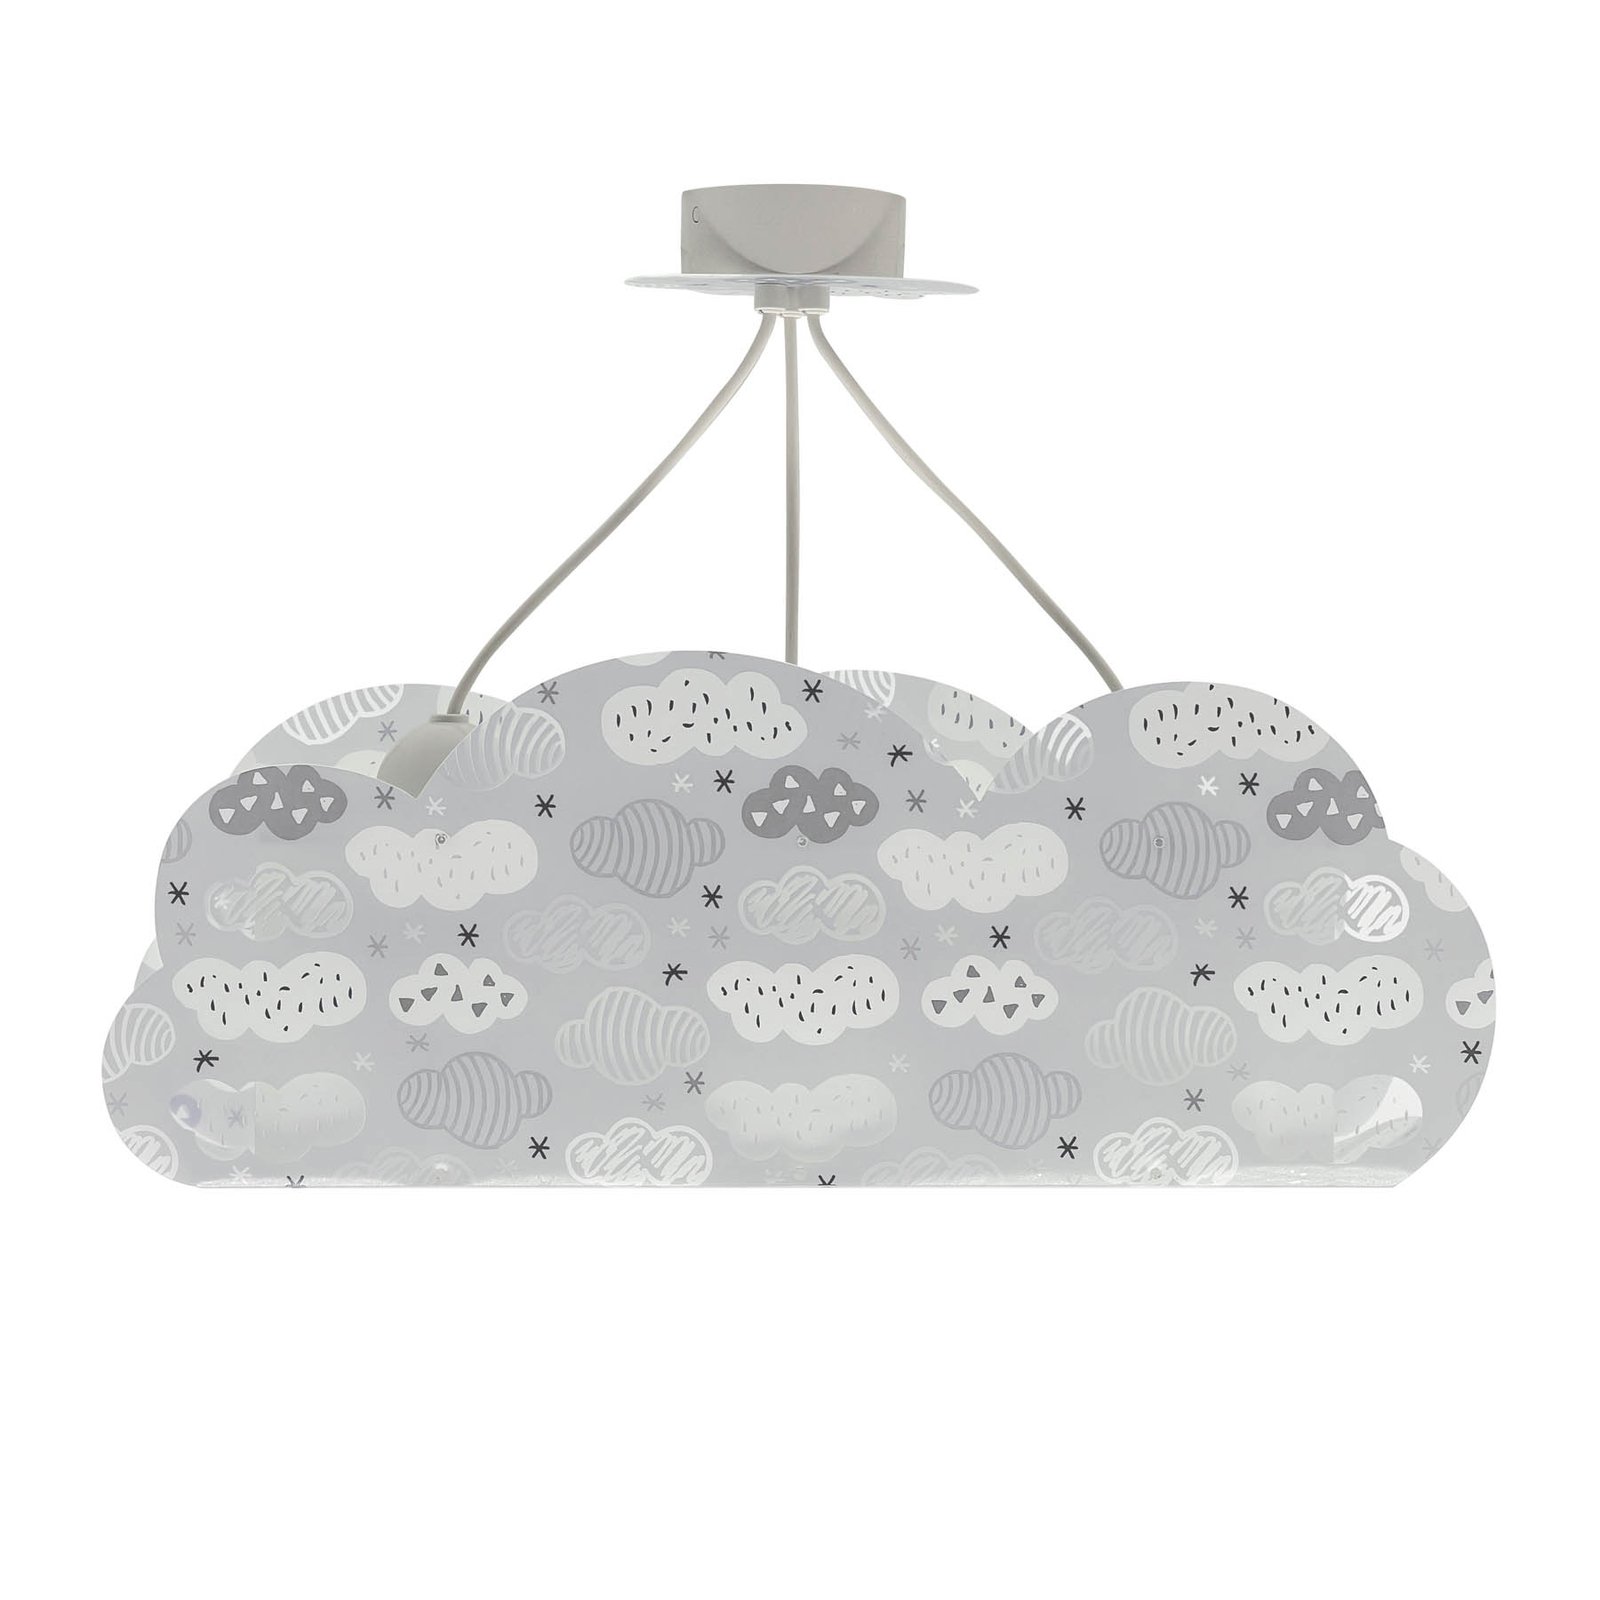 Candeeiro suspenso Dalber Cloud Grey em forma de nuvem, cinzento